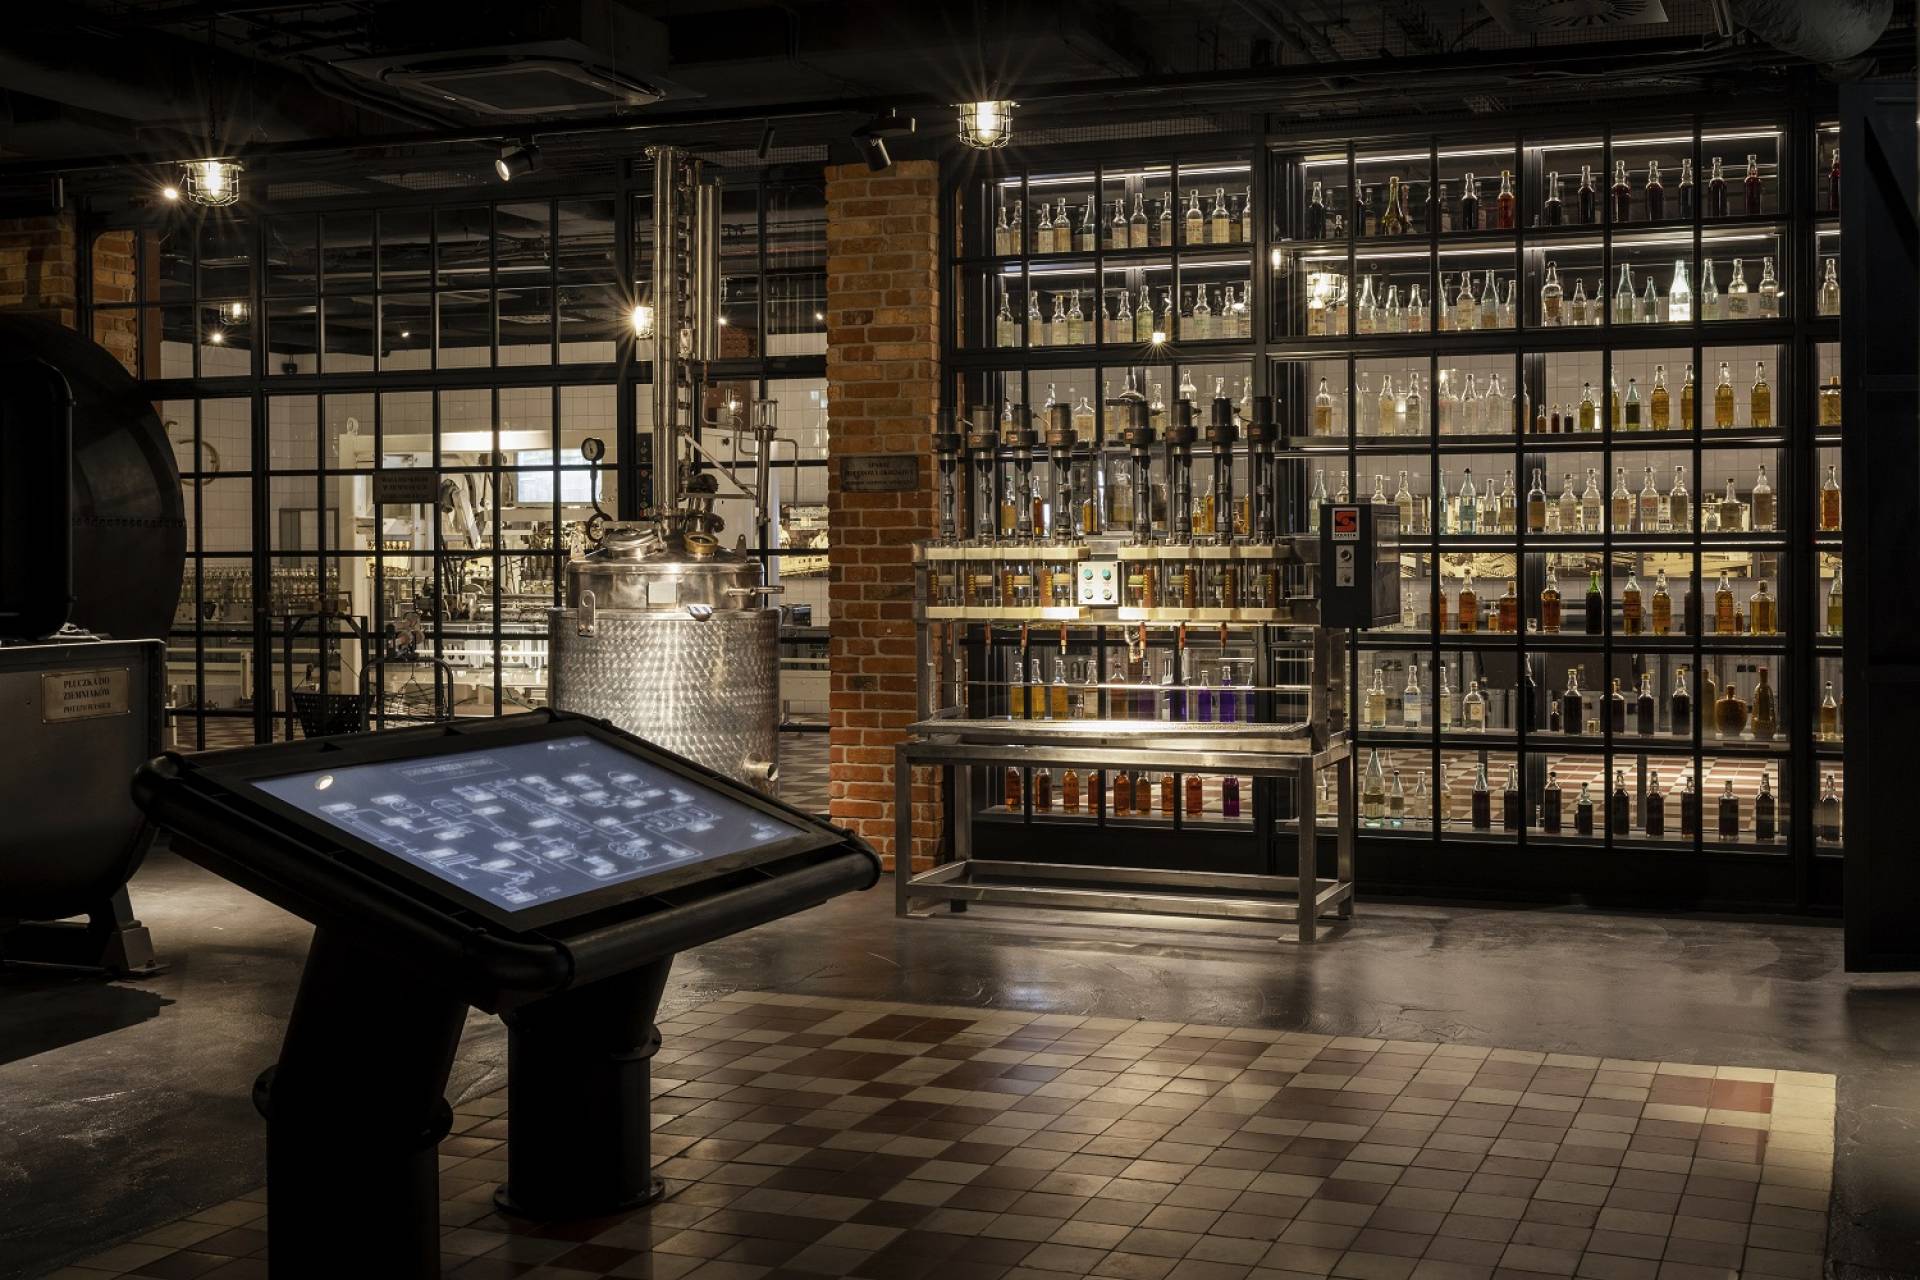 Muzeum Fabryka Wódki szuka nowych eksponatów, ekspozycja robi wrażenie